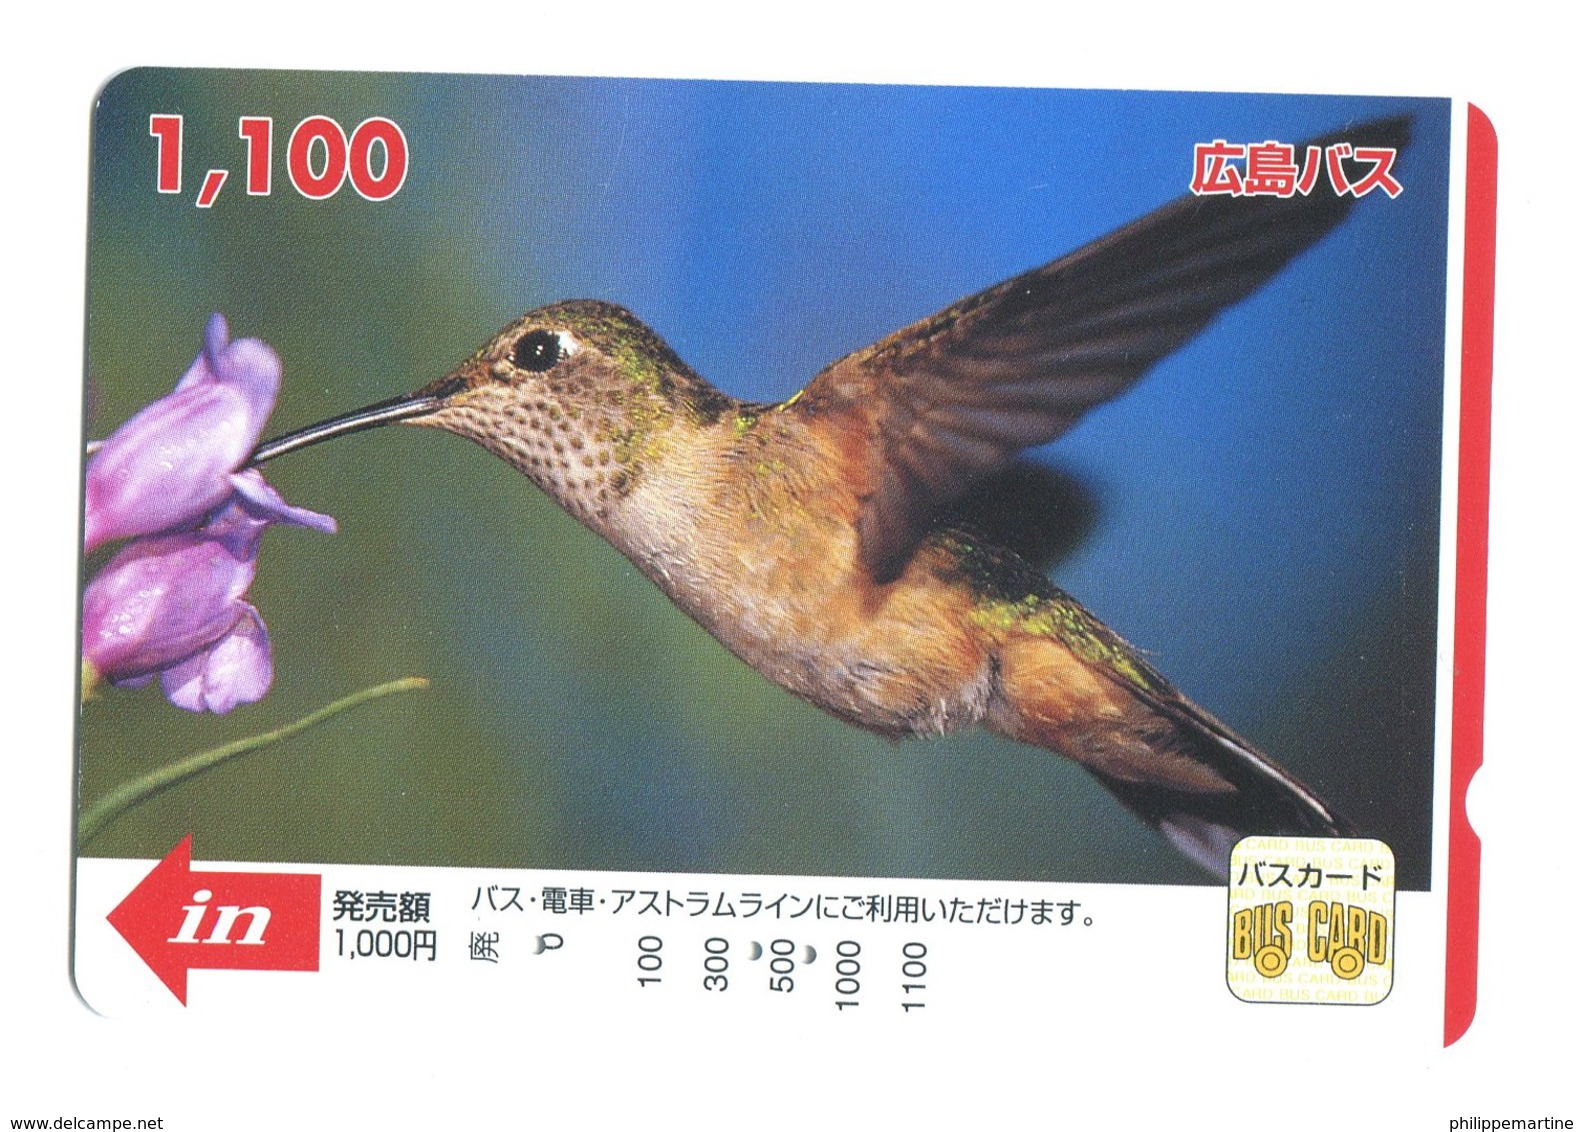 Japon - Bus Card : Colibri - World